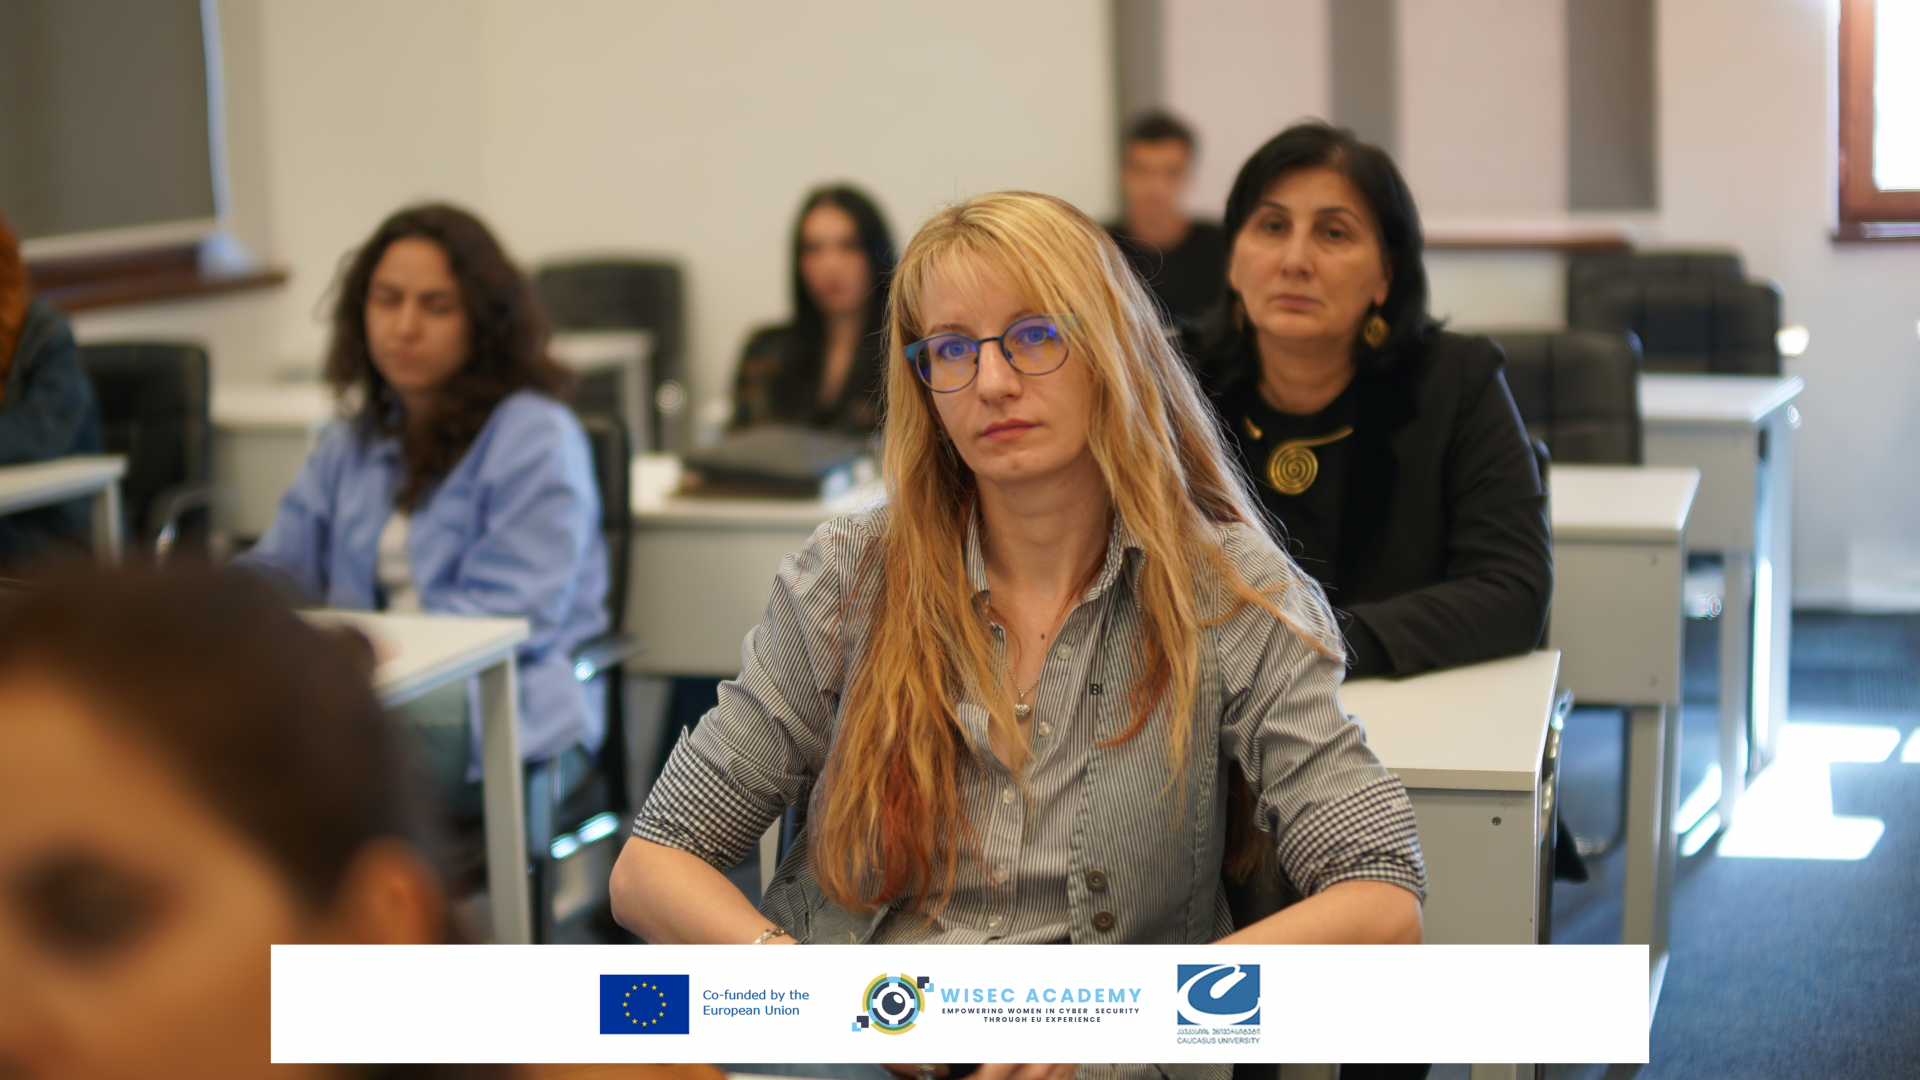 ახალი ჟან მონეს მოდულის პრეზენტაცია - "ქალთა შესაძლებლობების გაზრდა კიბერუსაფრთხოებაში ევროკავშირის გამოცდილების საფუძველზე - WISEC ACADEMY"